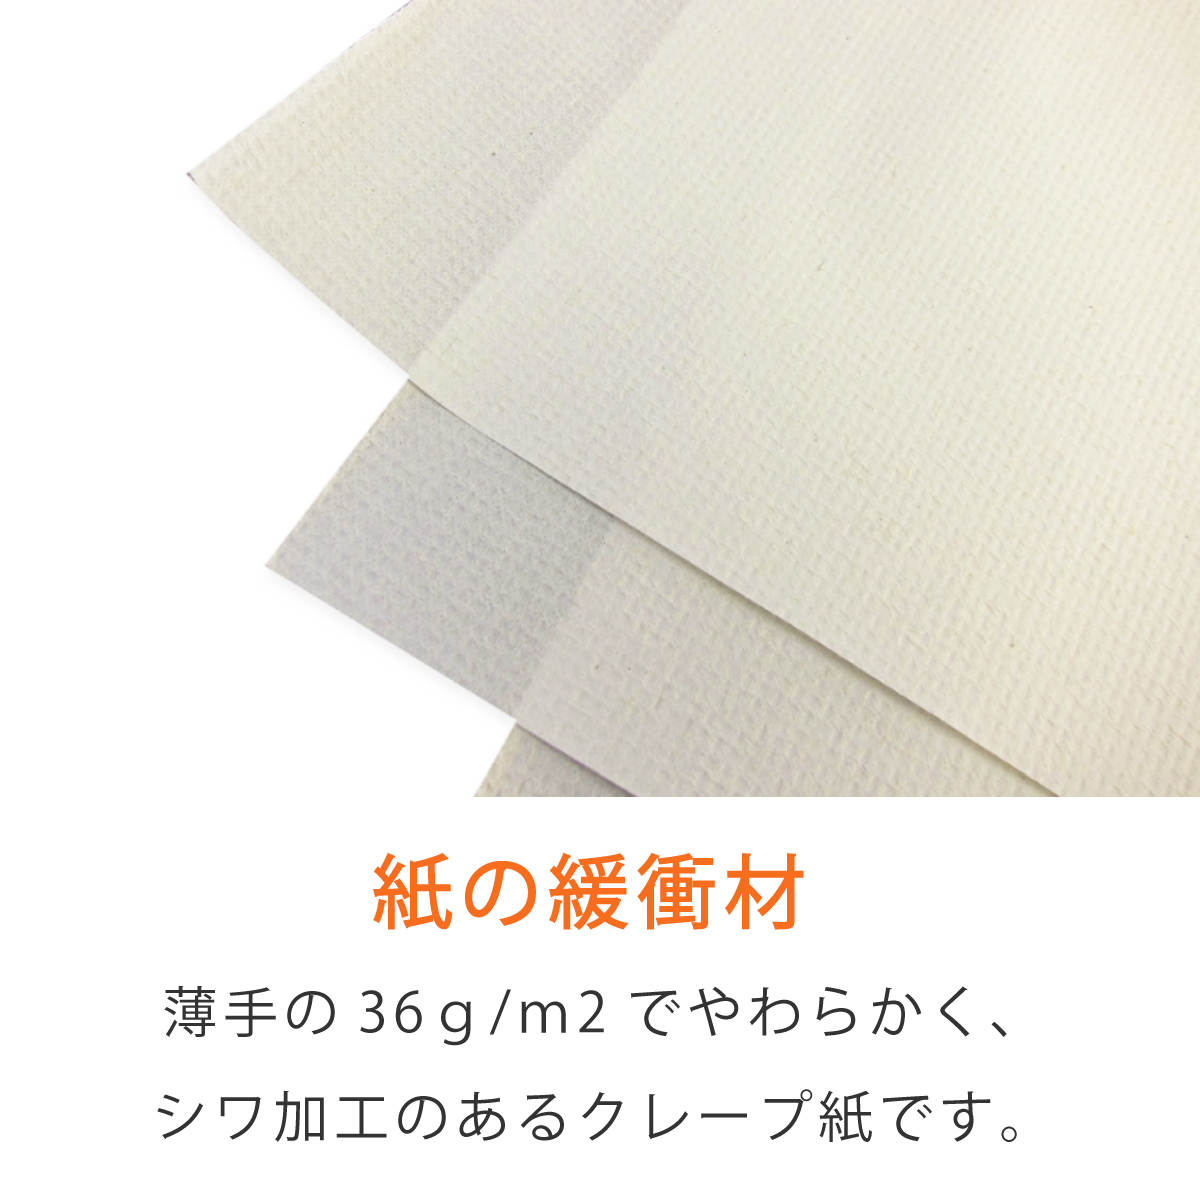  блинчики бумага ( морщина бумага )36g/m2 белый цвет 450×450mm 100 листов 